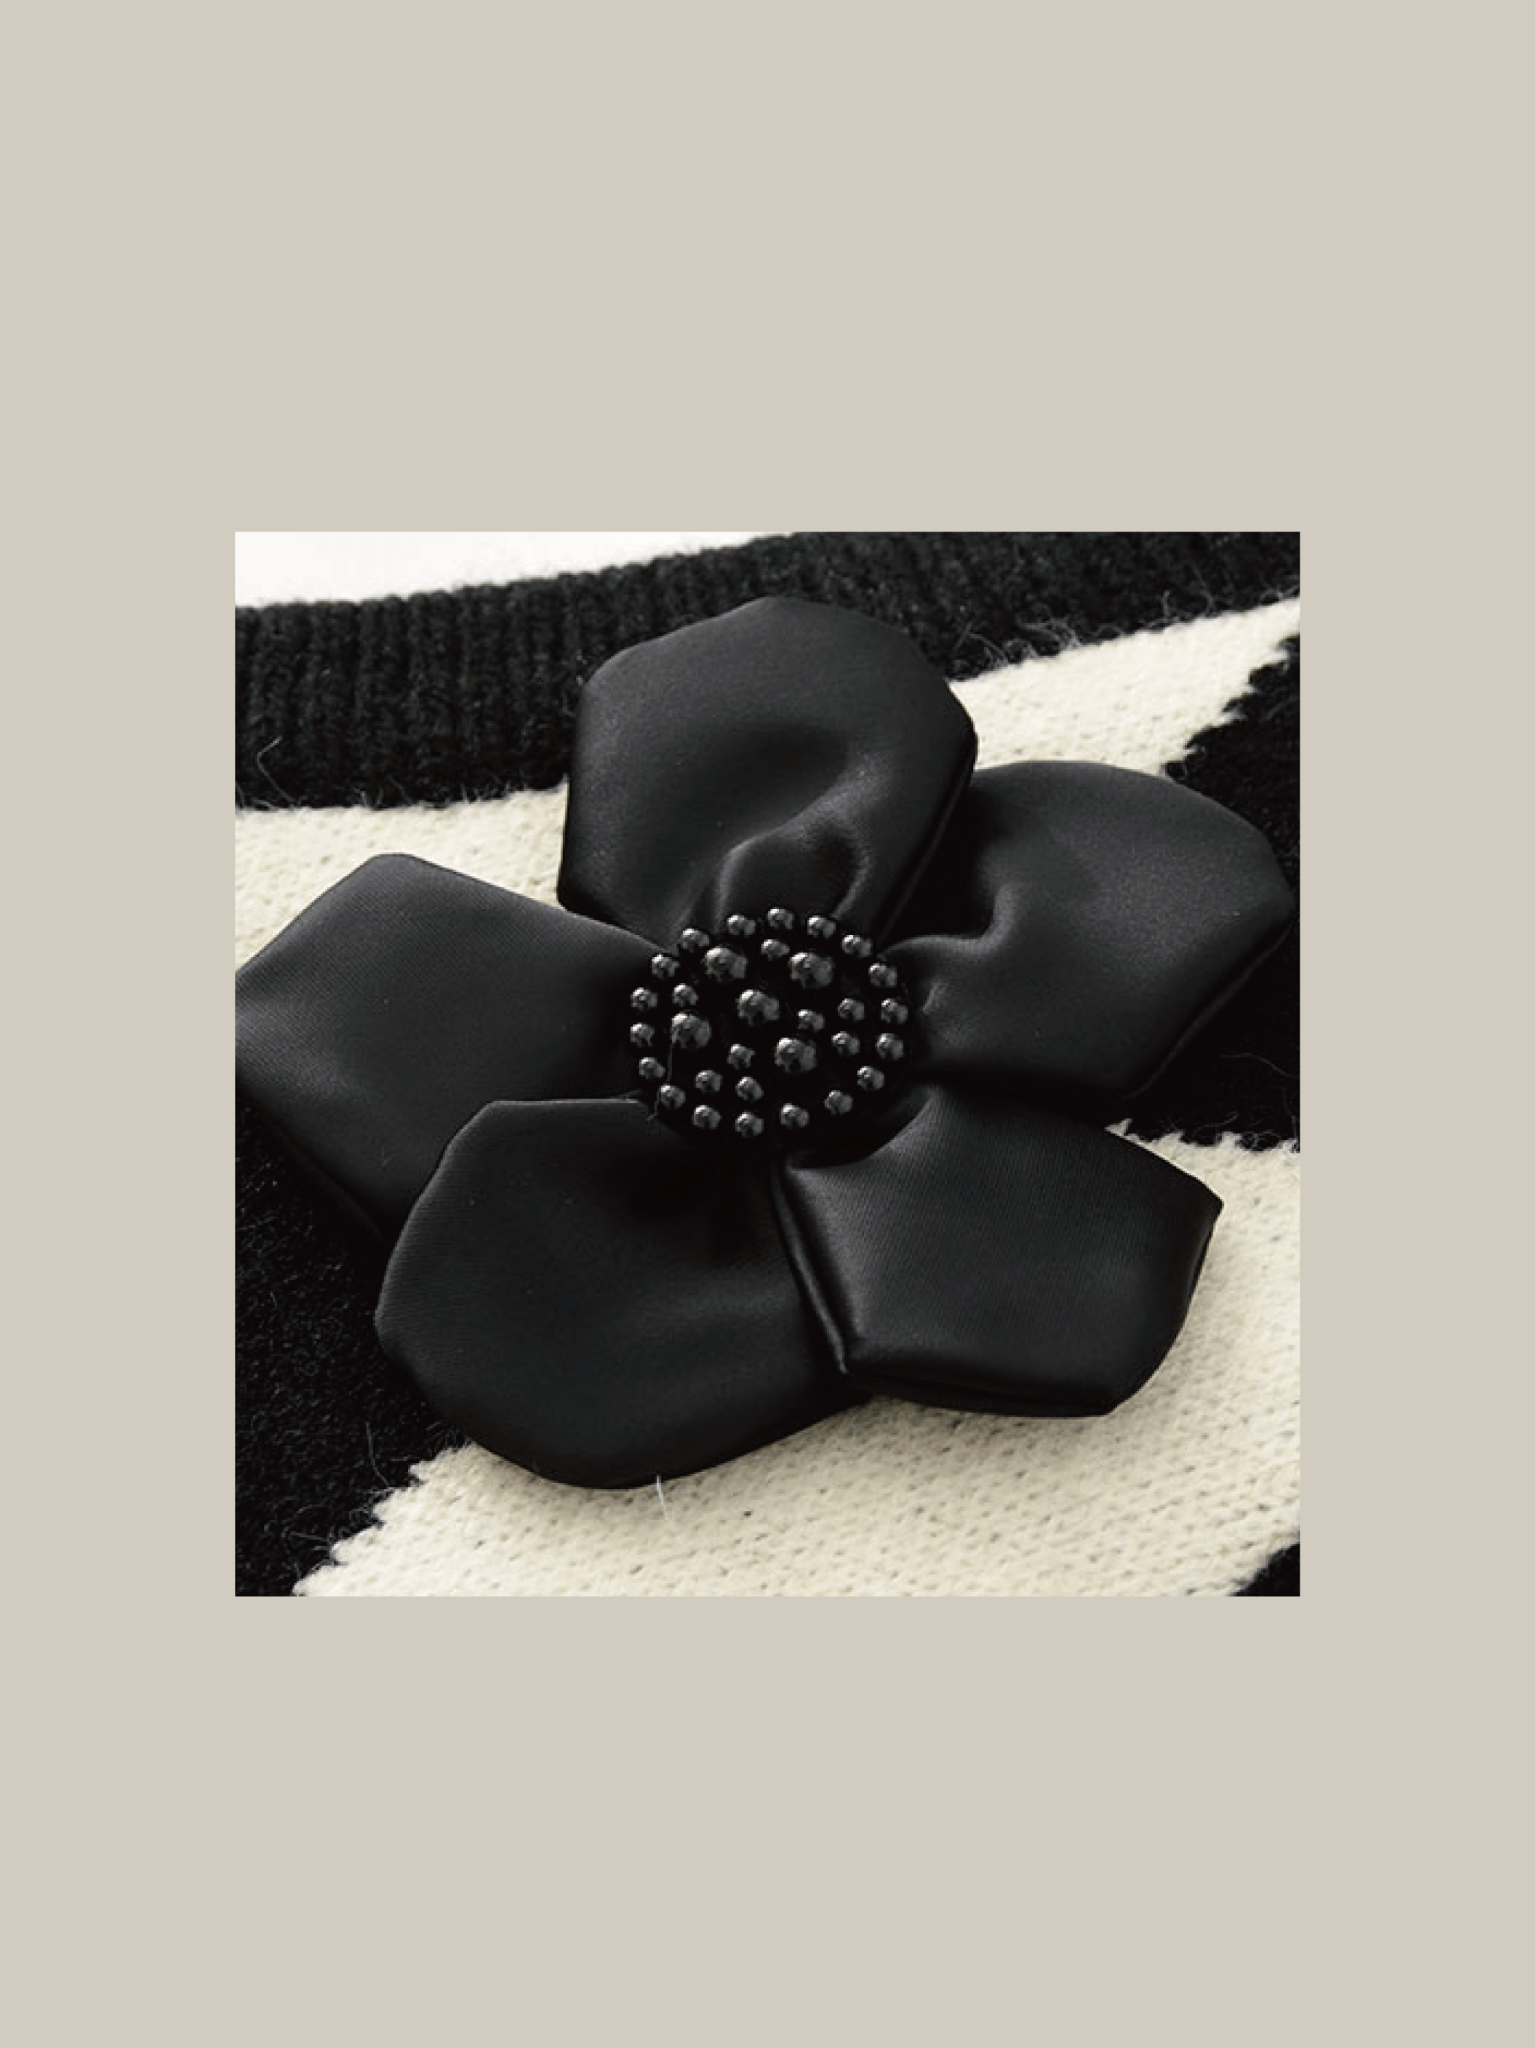 Flower Argyle Pattern Knit Vest - LOVE POMME POMME